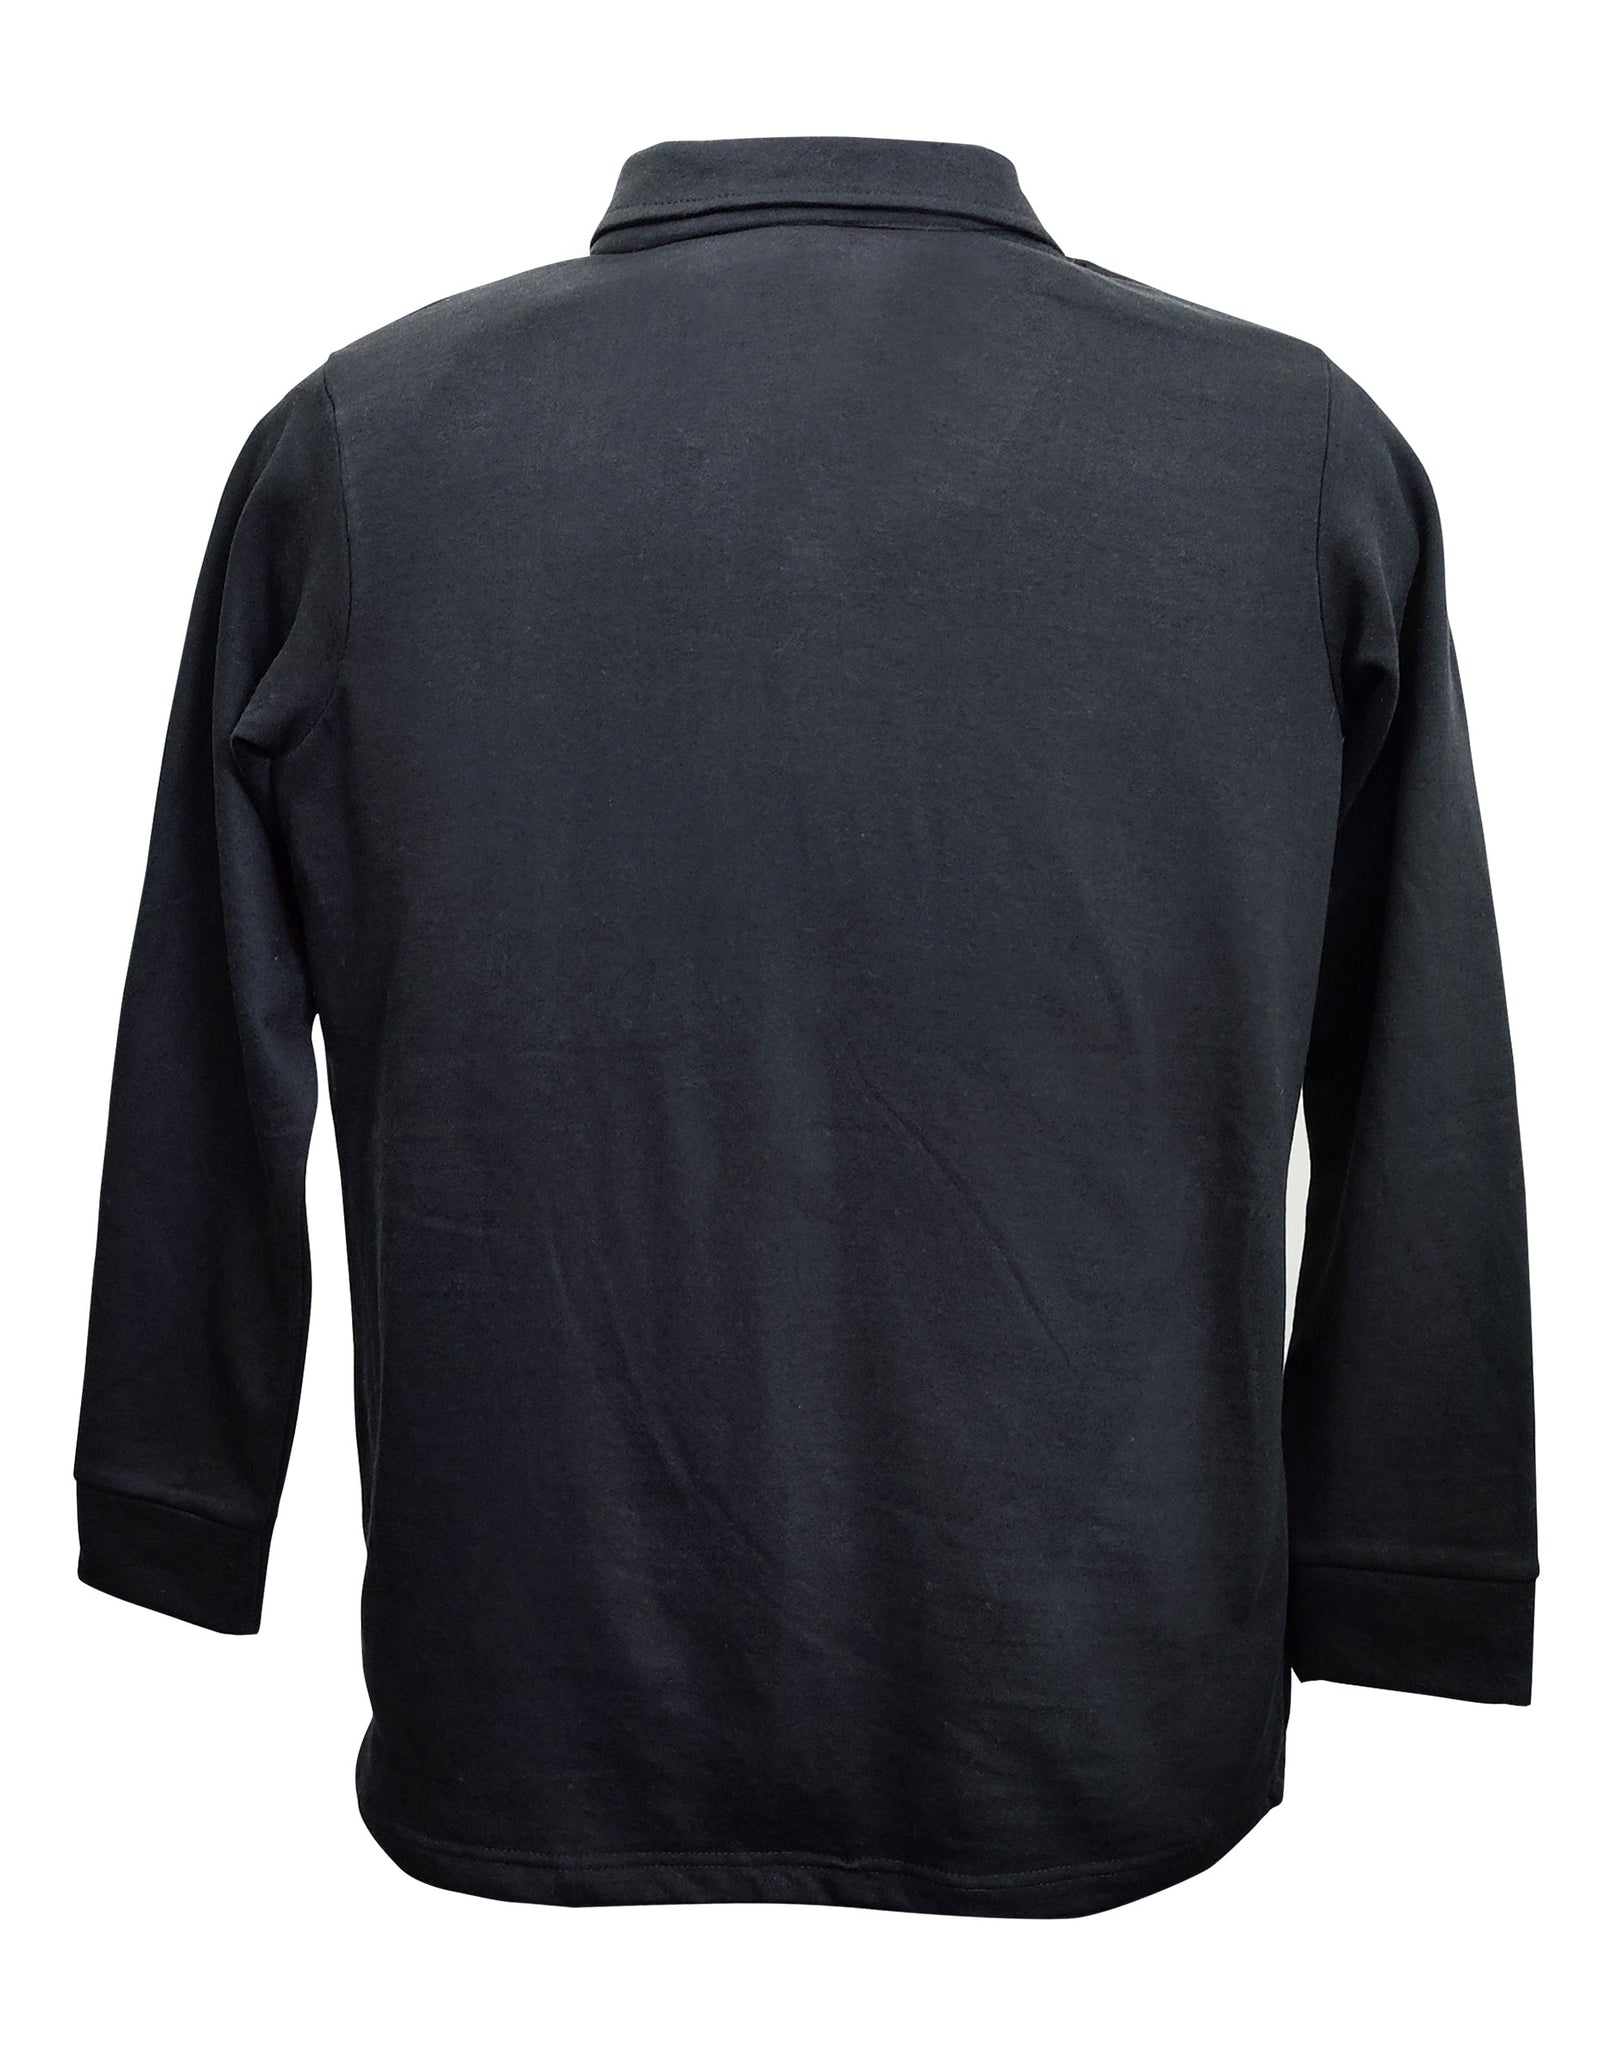 Sweatshirt for Men  - Black